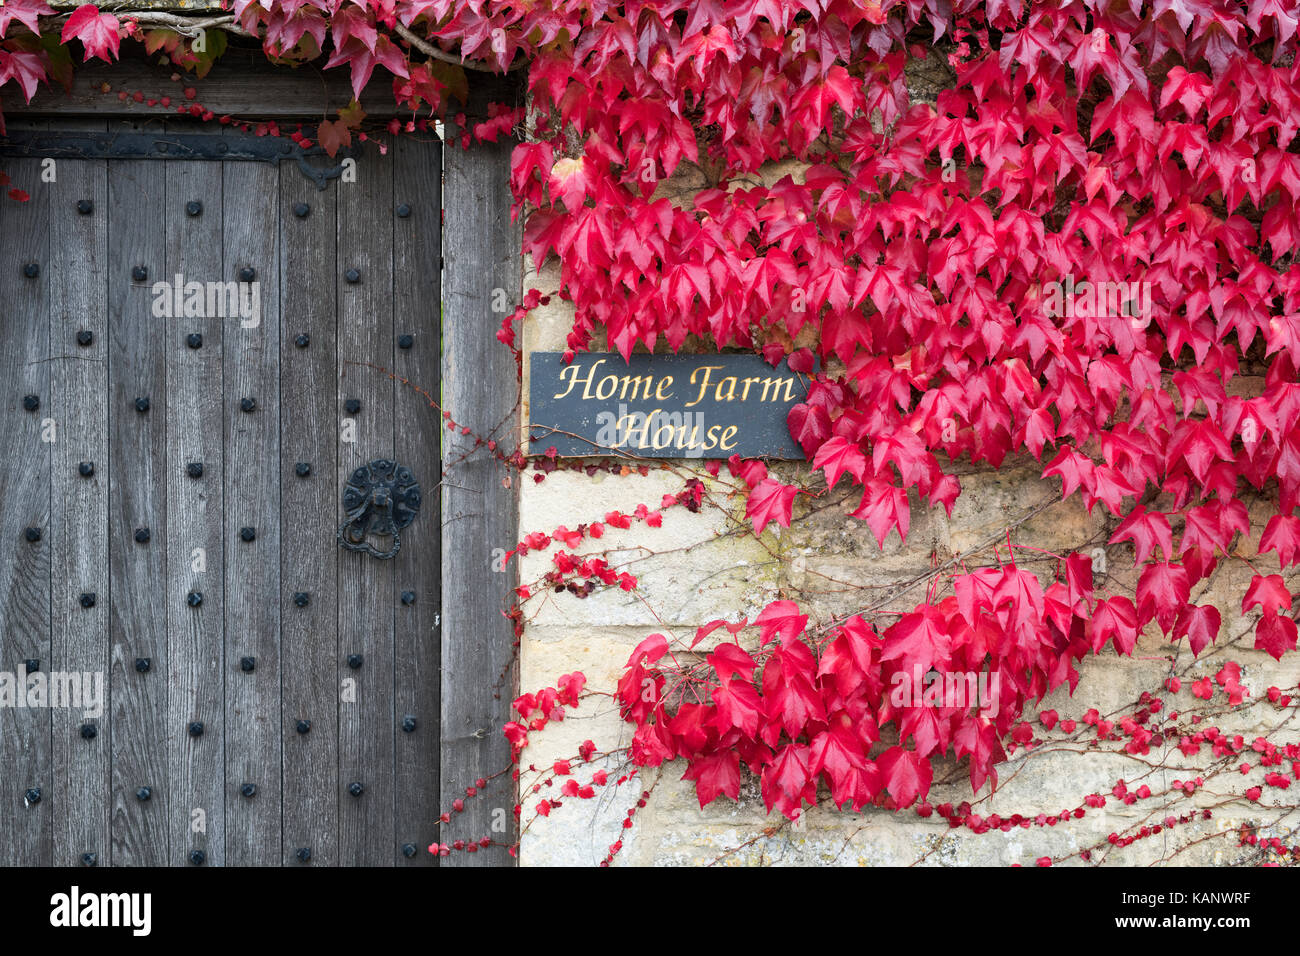 Du Parthenocissus tricuspidata. Boston ivy / réducteur japonais couvrant un chalet jardin mur en pierre. Minster Lovell, Cotswolds, Gloucestershire, Royaume-Uni Banque D'Images